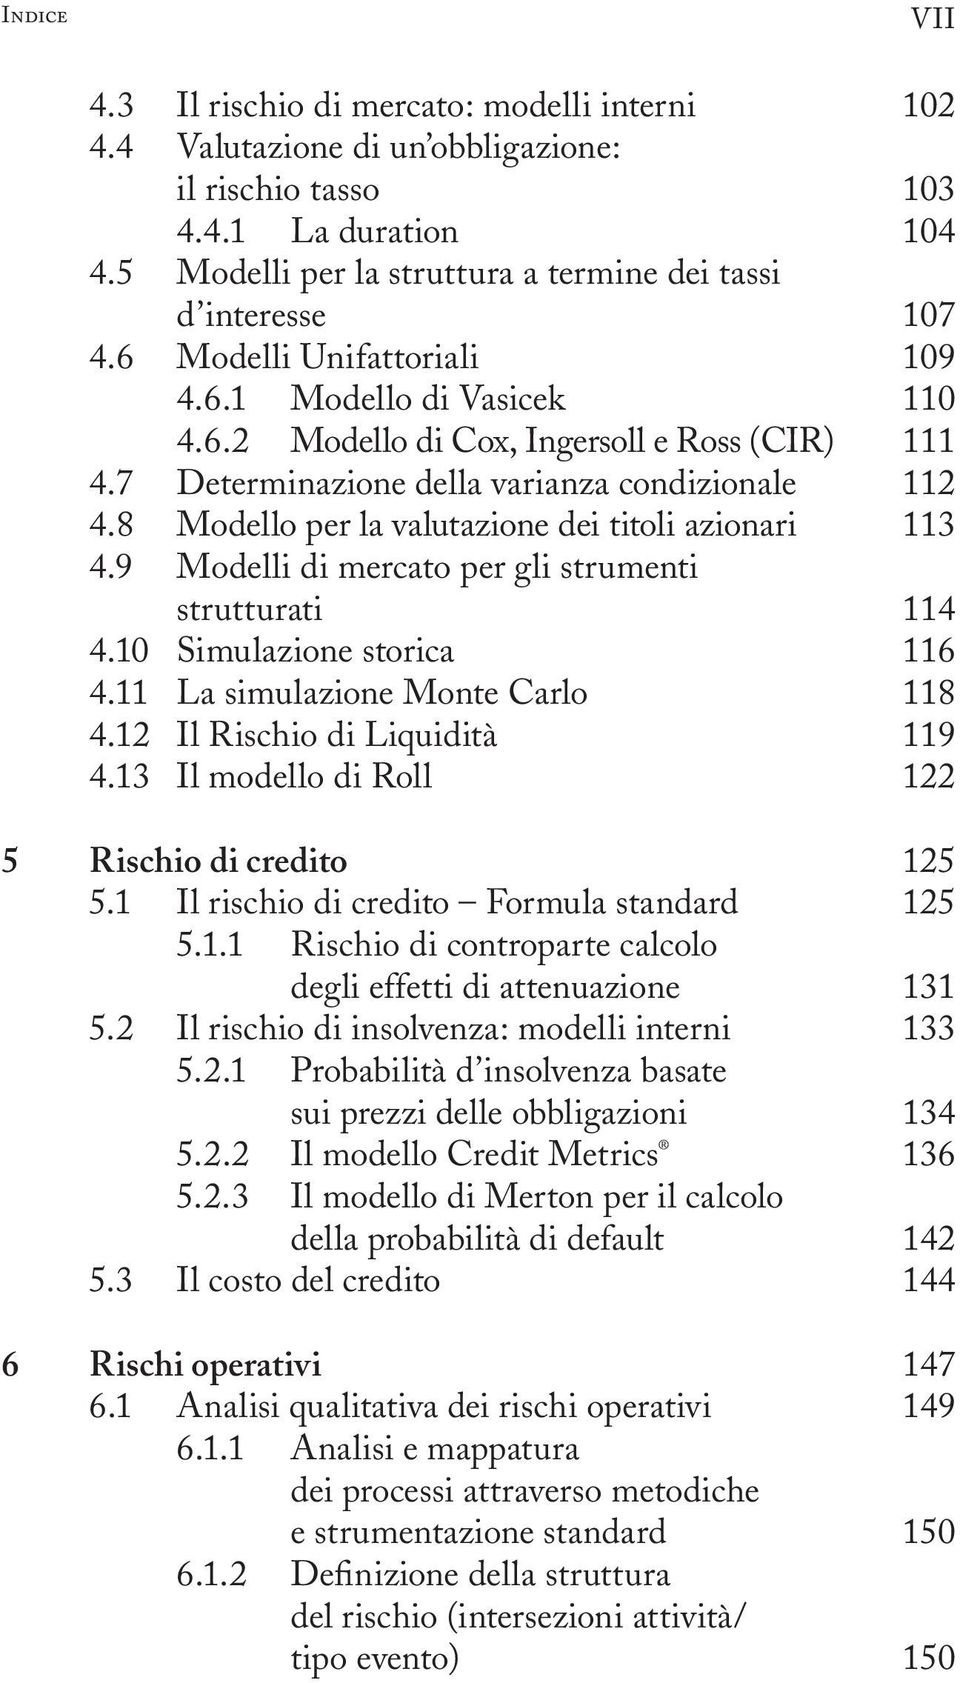 9 Modelli di mercato per gli strumenti strutturati 4.10 Simulazione storica 4.11 La simulazione Monte Carlo 4.12 Il Rischio di Liquidità 4.13 Il modello di Roll 5 Rischio di credito 5.